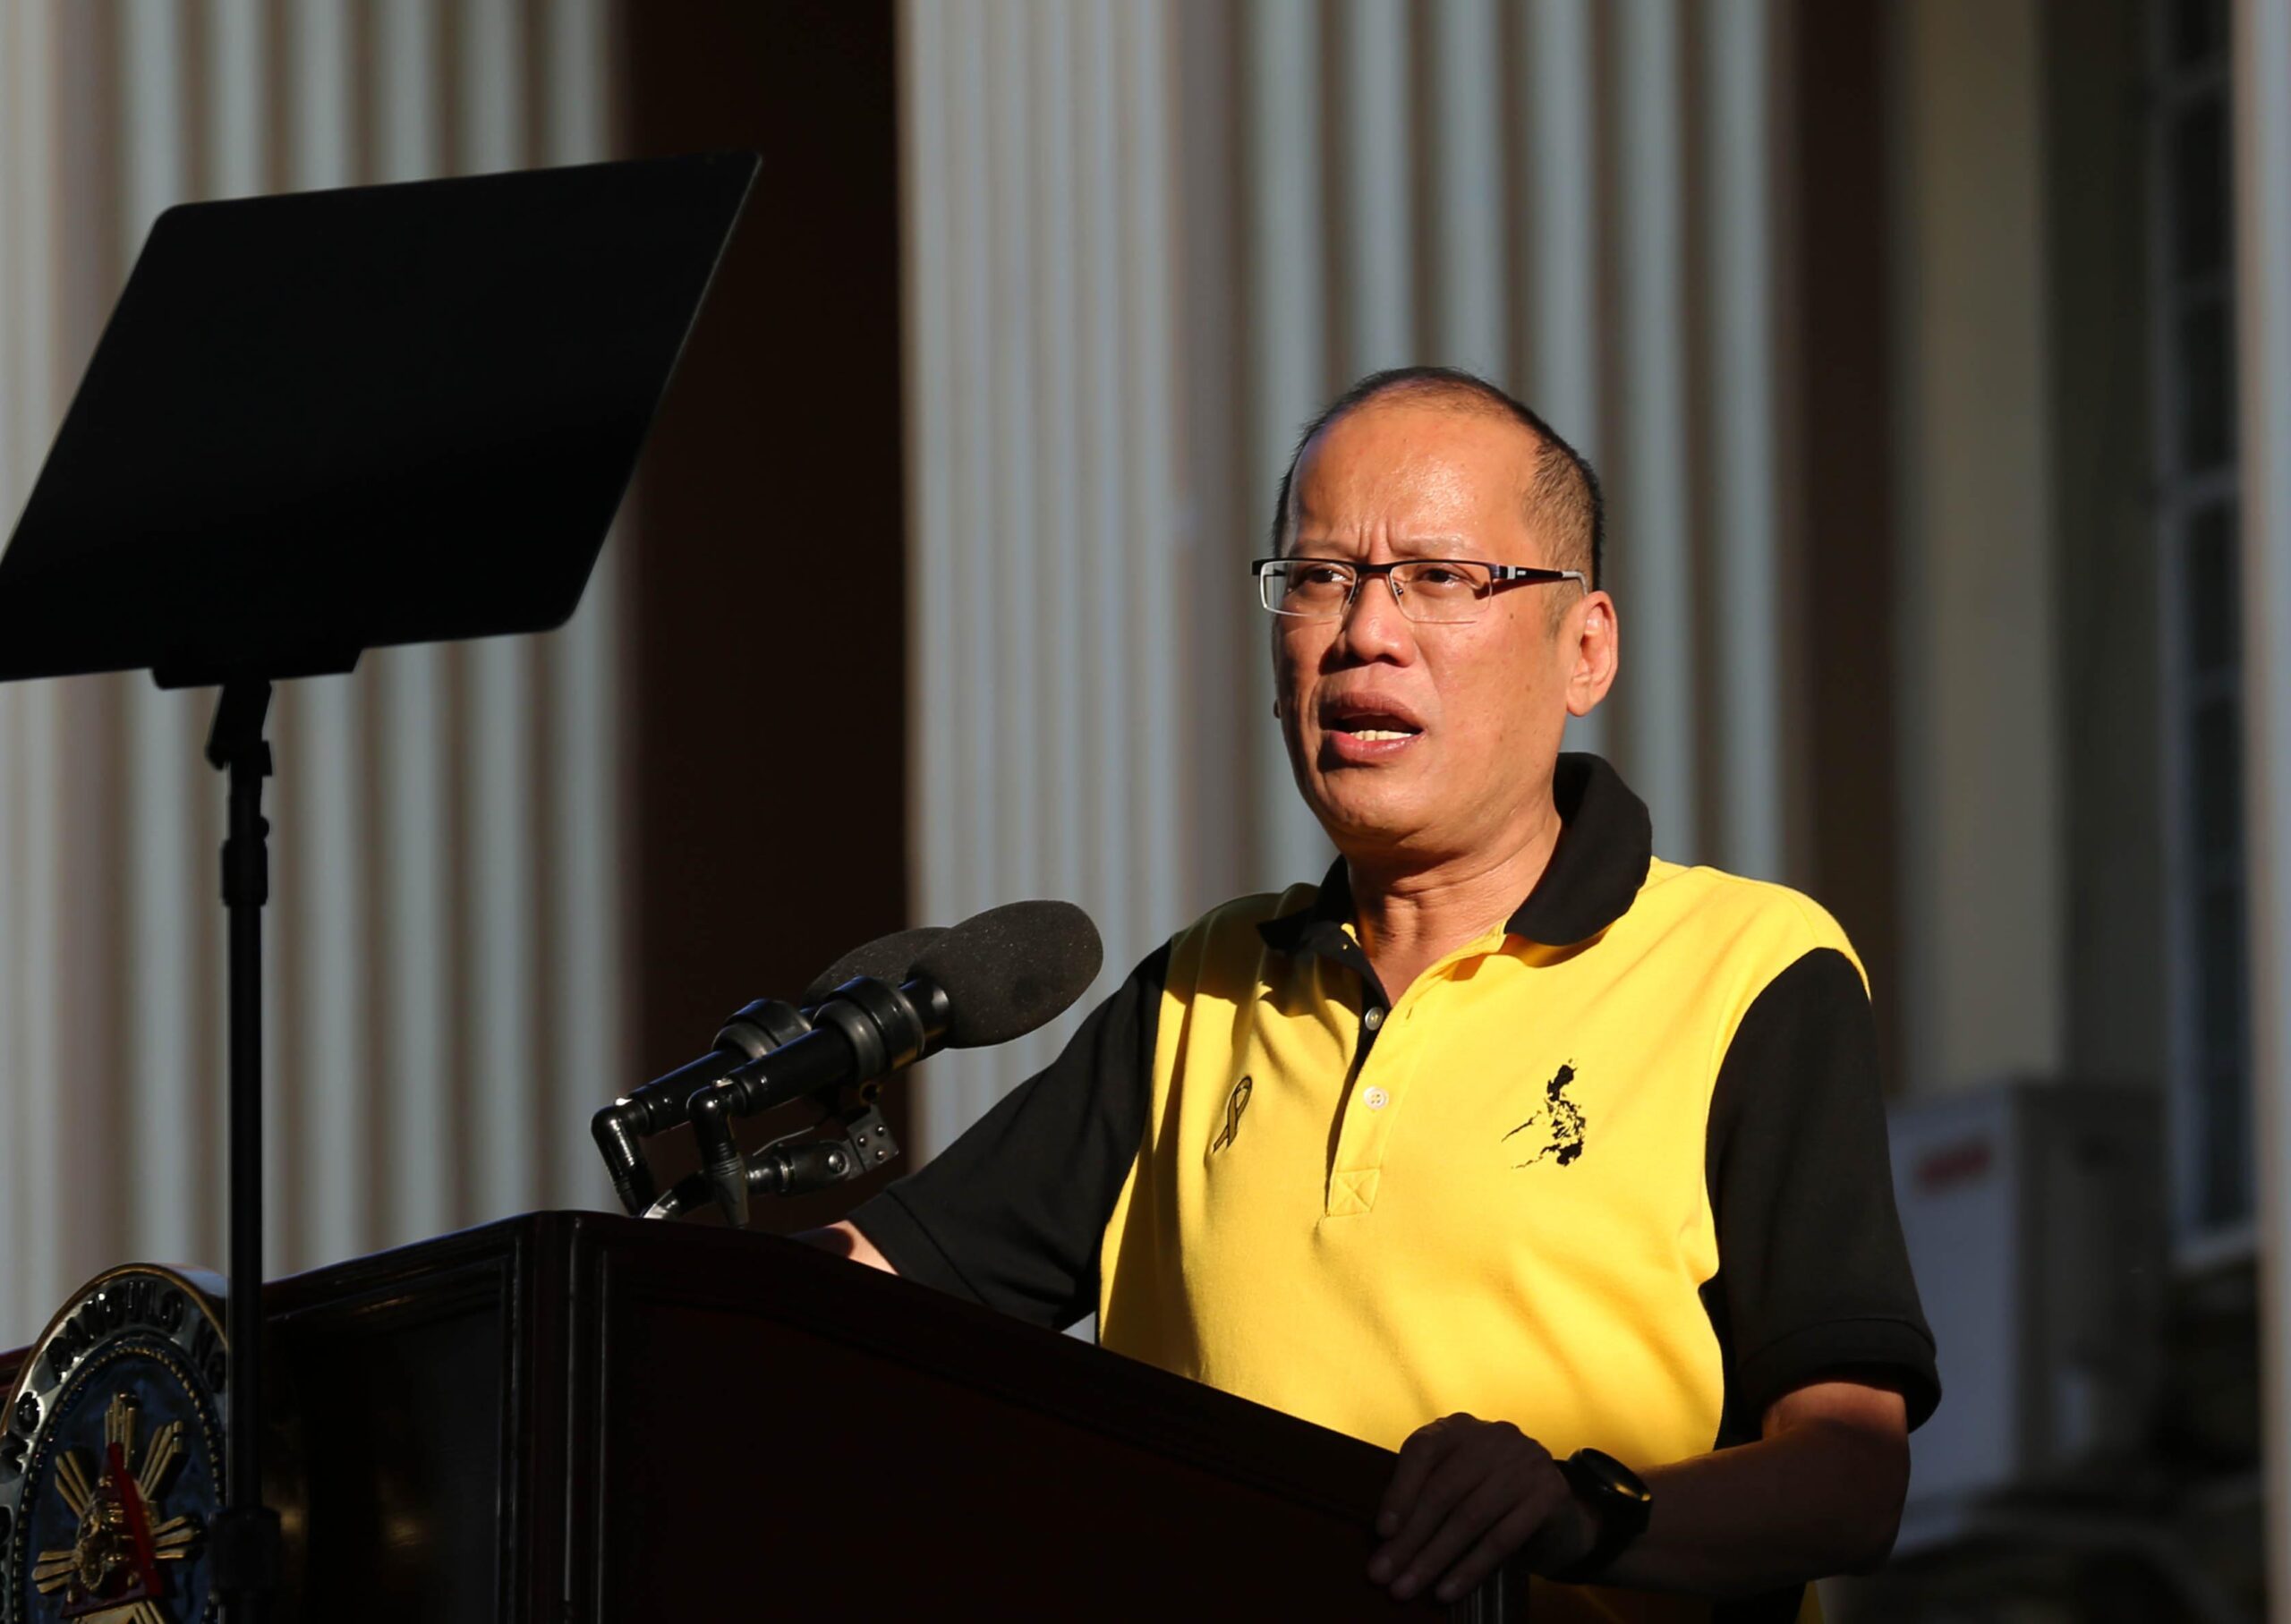 Aquino: Shouldn’t Duterte’s pronouncements worry us?